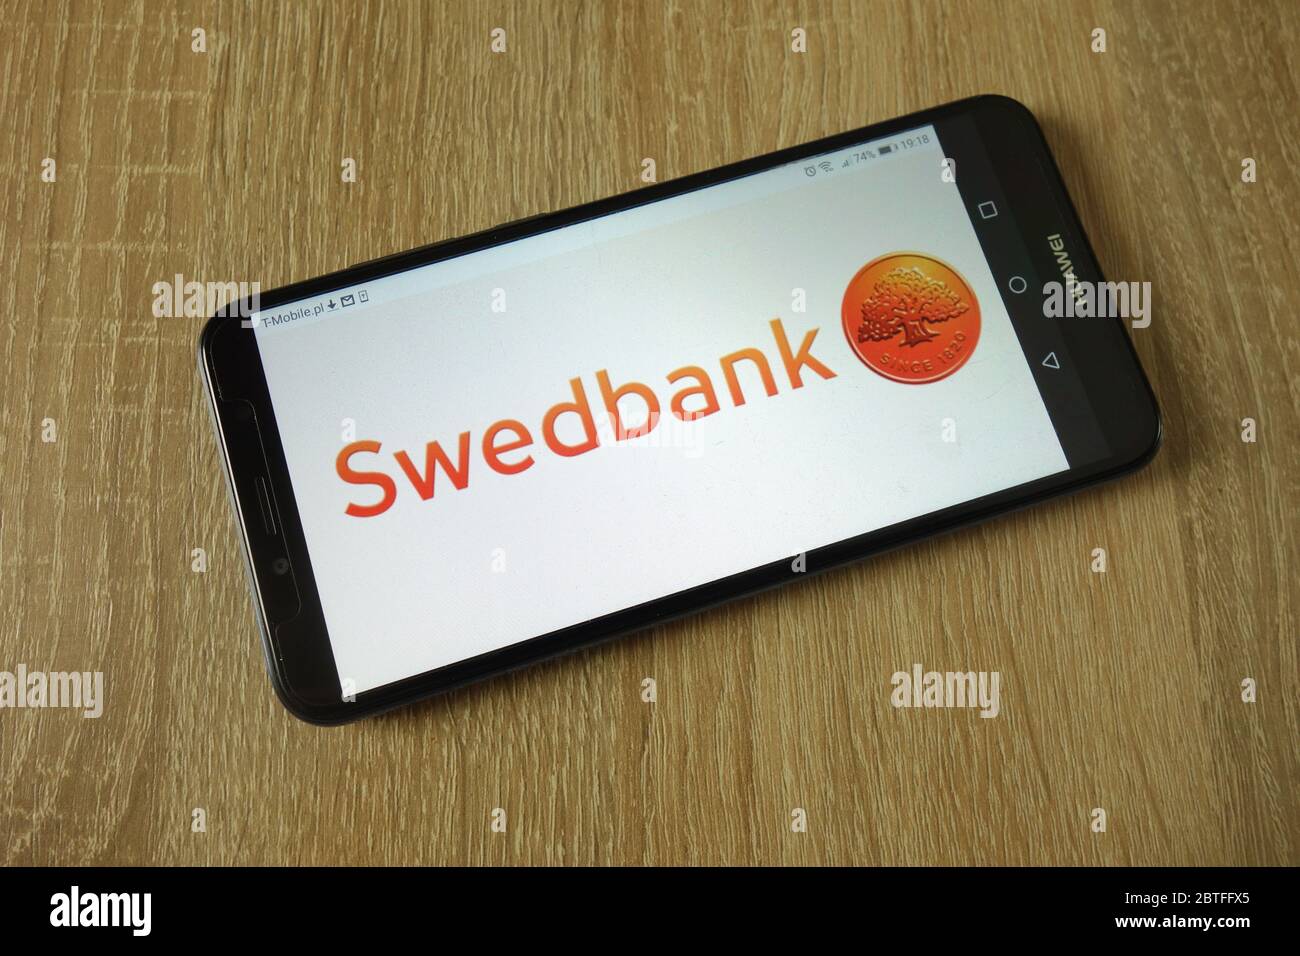 Swedbank AB logo displayed on smartphone Stock Photo